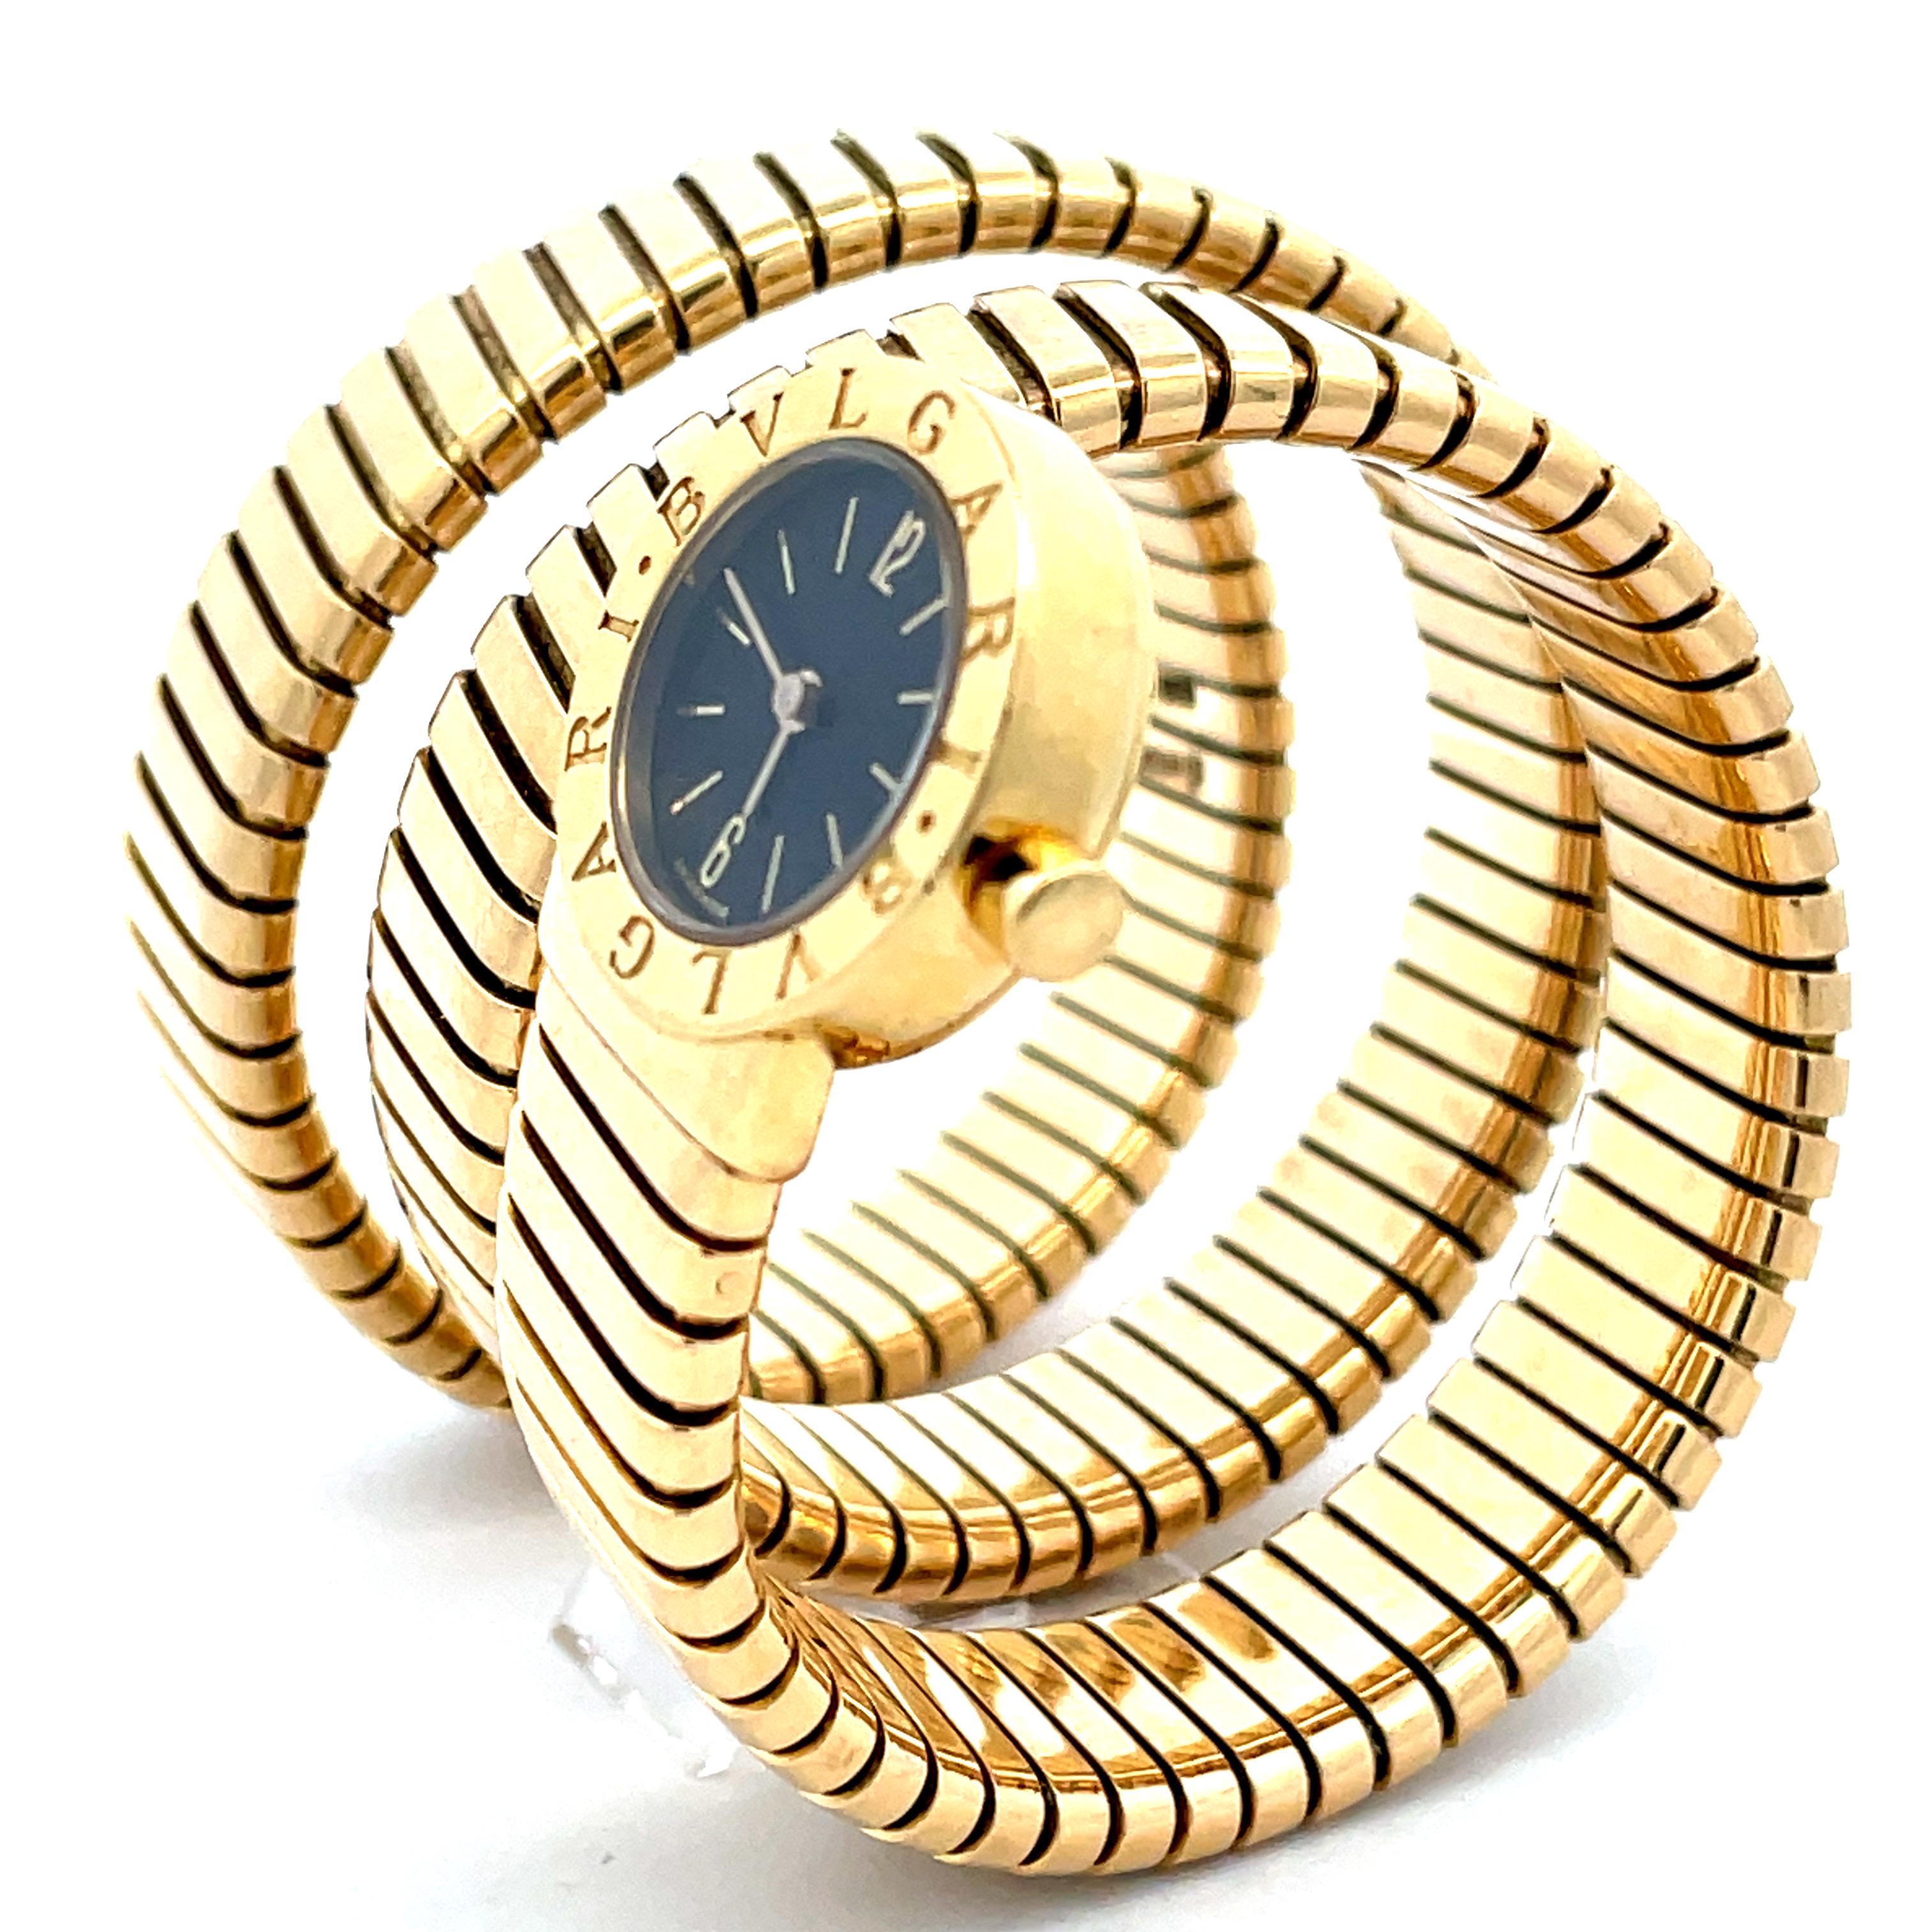 No hay nada mejor que este reloj Bulgari Tubogas de señora con brazalete de serpiente en oro amarillo de 18 quilates. Este reloj de cuarzo tiene una pequeña cabeza redonda y esfera negra. Un reloj icónico que llevará siempre. 
1978 circa.
Se puede